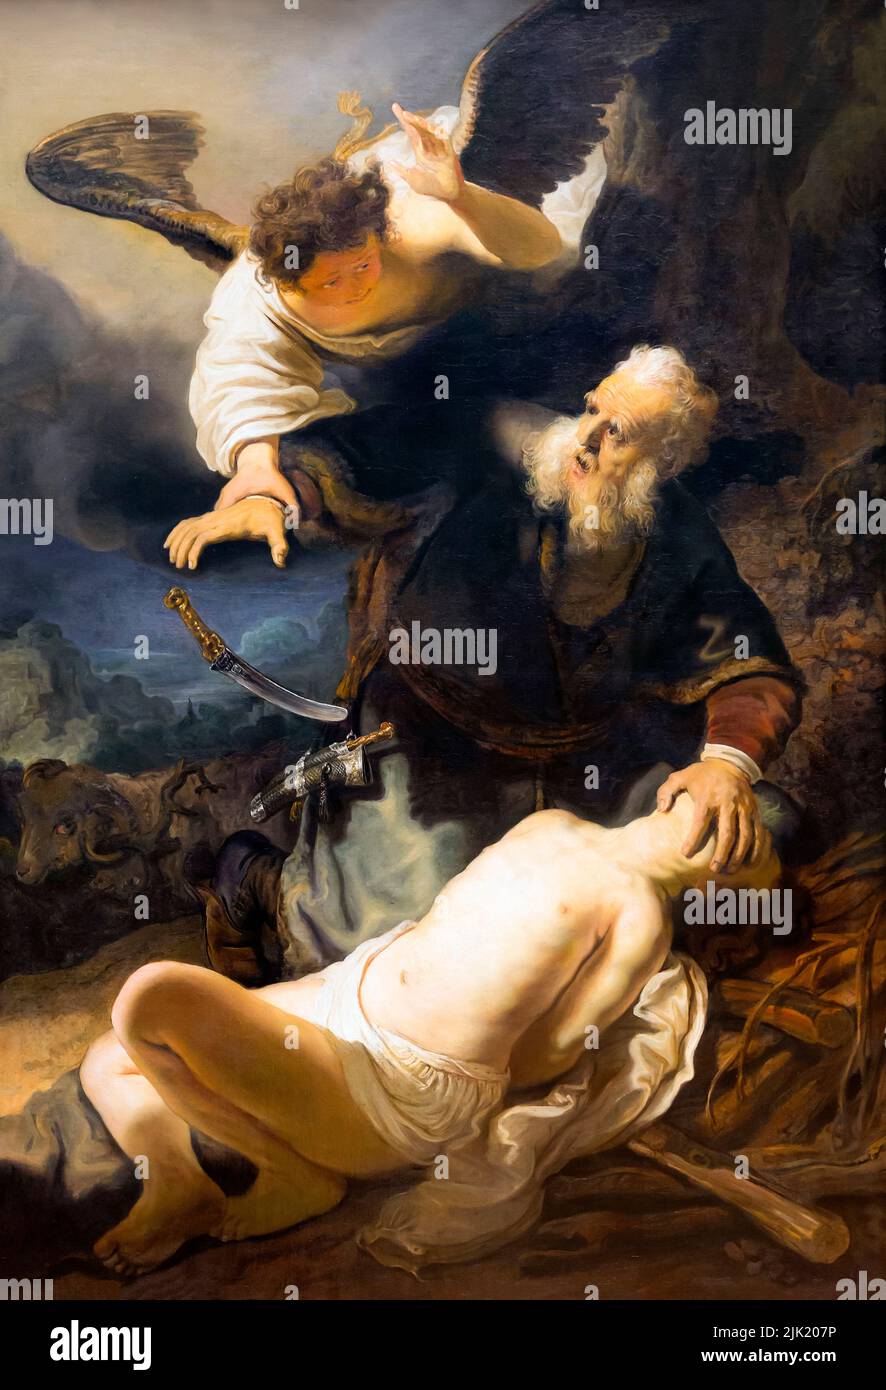 Le sacrifice d'Isaac, Rembrandt, 1636, Alte Pinakothek, Munich, Allemagne Banque D'Images